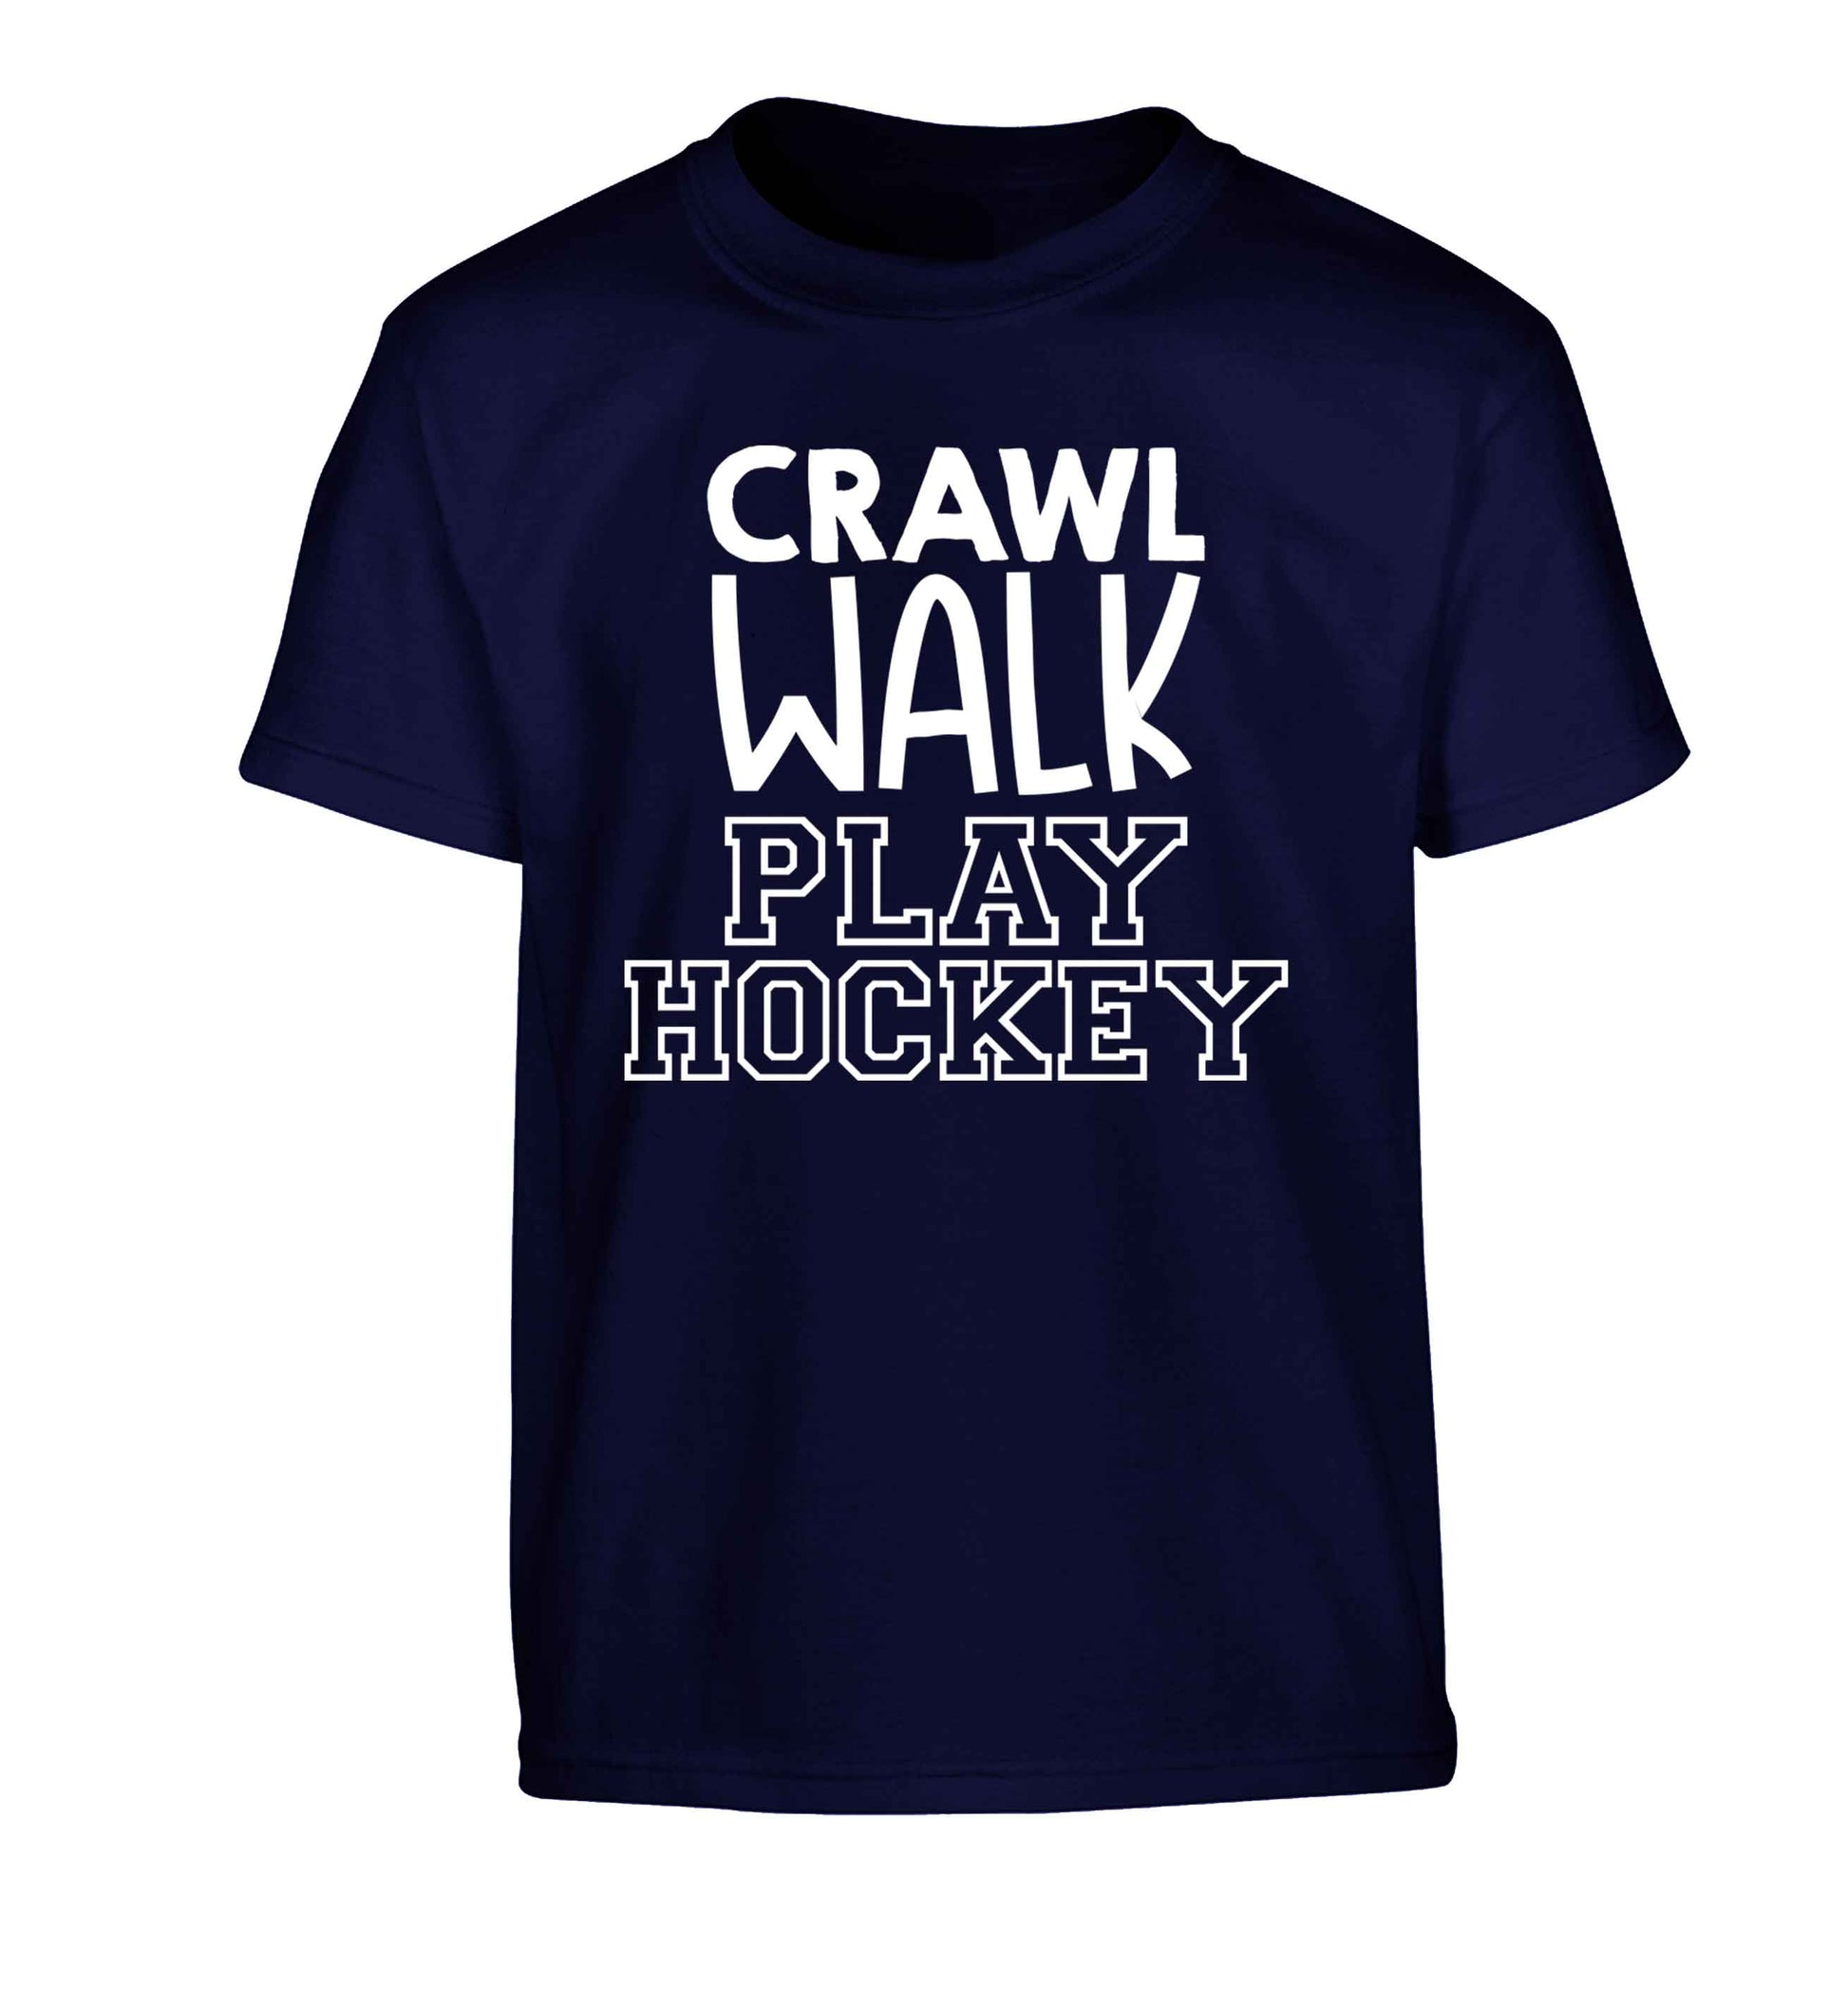 Crawl walk play hockey Children's navy Tshirt 12-13 Years